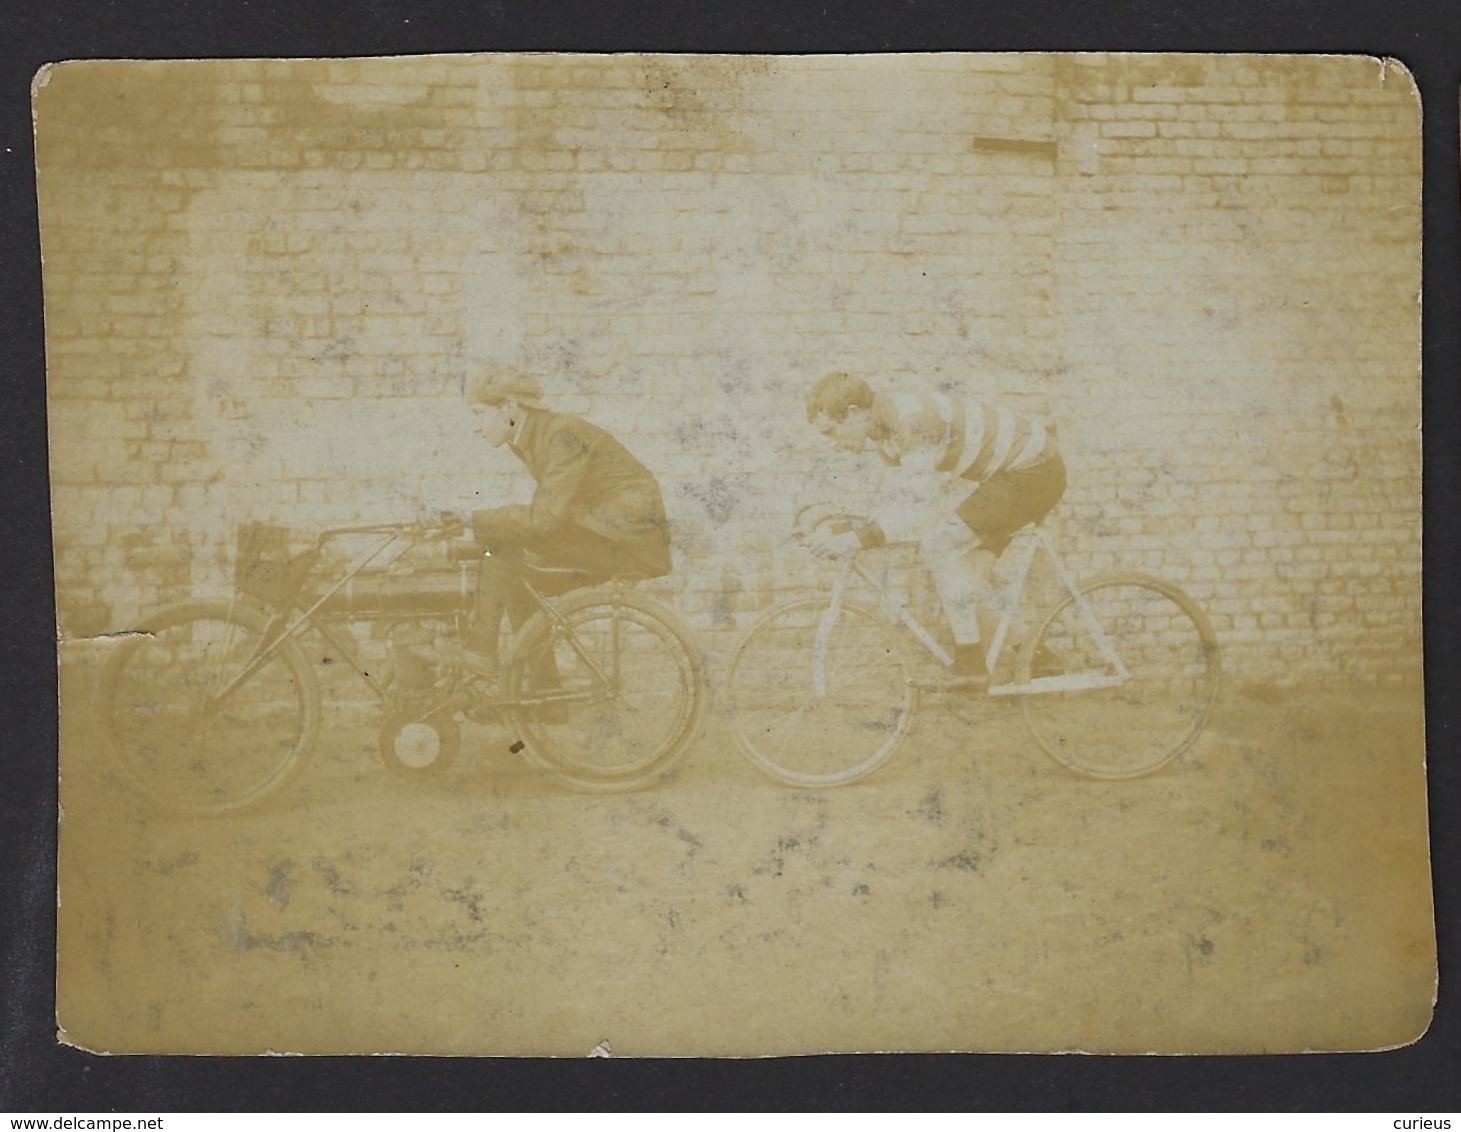 ANCIEN PHOTO * MOTO ET COUREUR CYCLISTE * " DERNY " * GANGMAKER ? * ANNEES '30 ? * OUDE FOTO * 11 X 8 CM - Automobili